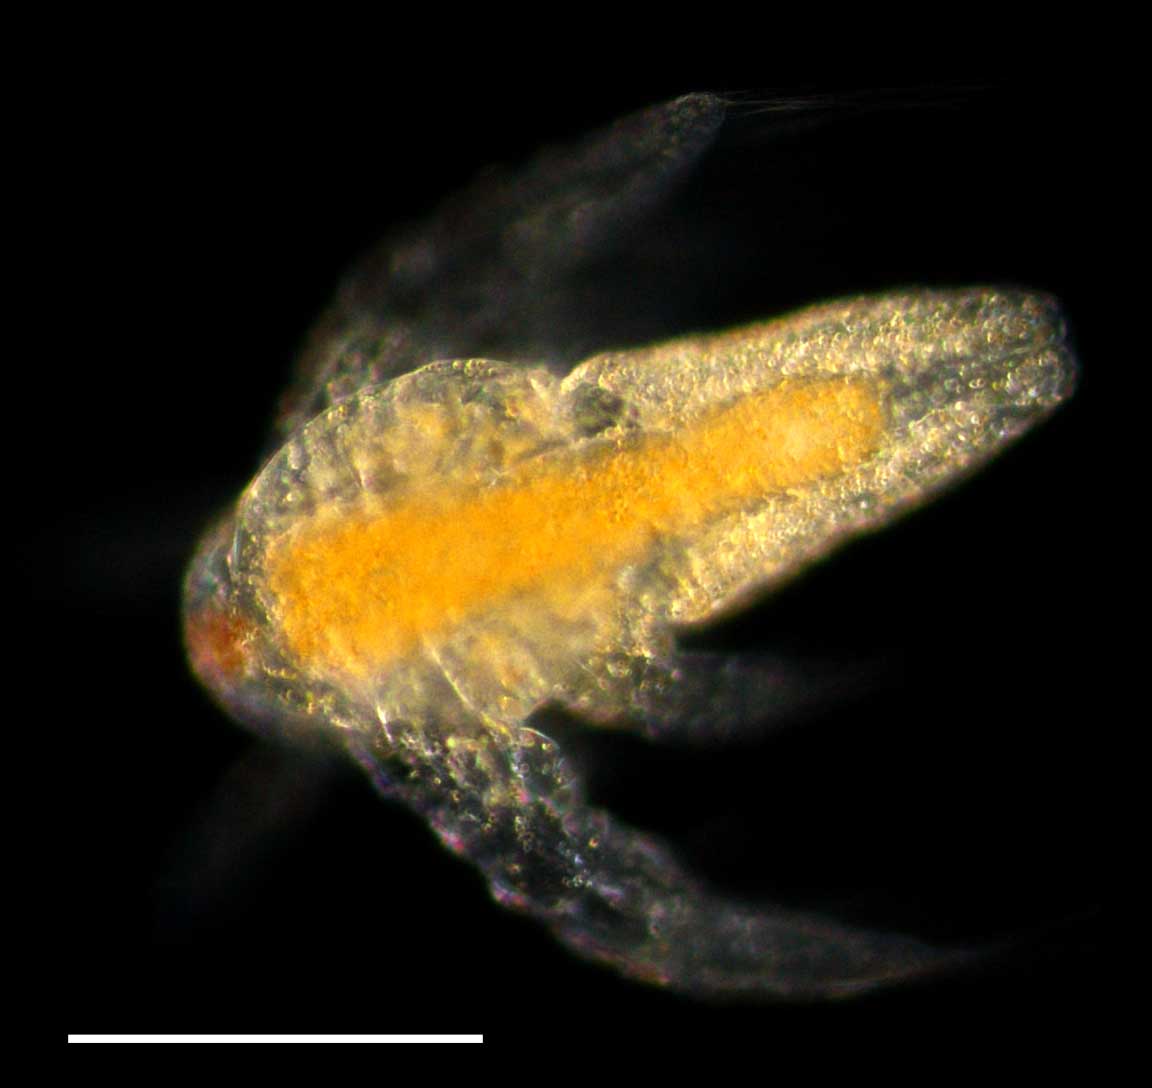 アルテミア (Artemia salina)のノープリウス幼生の画像です。